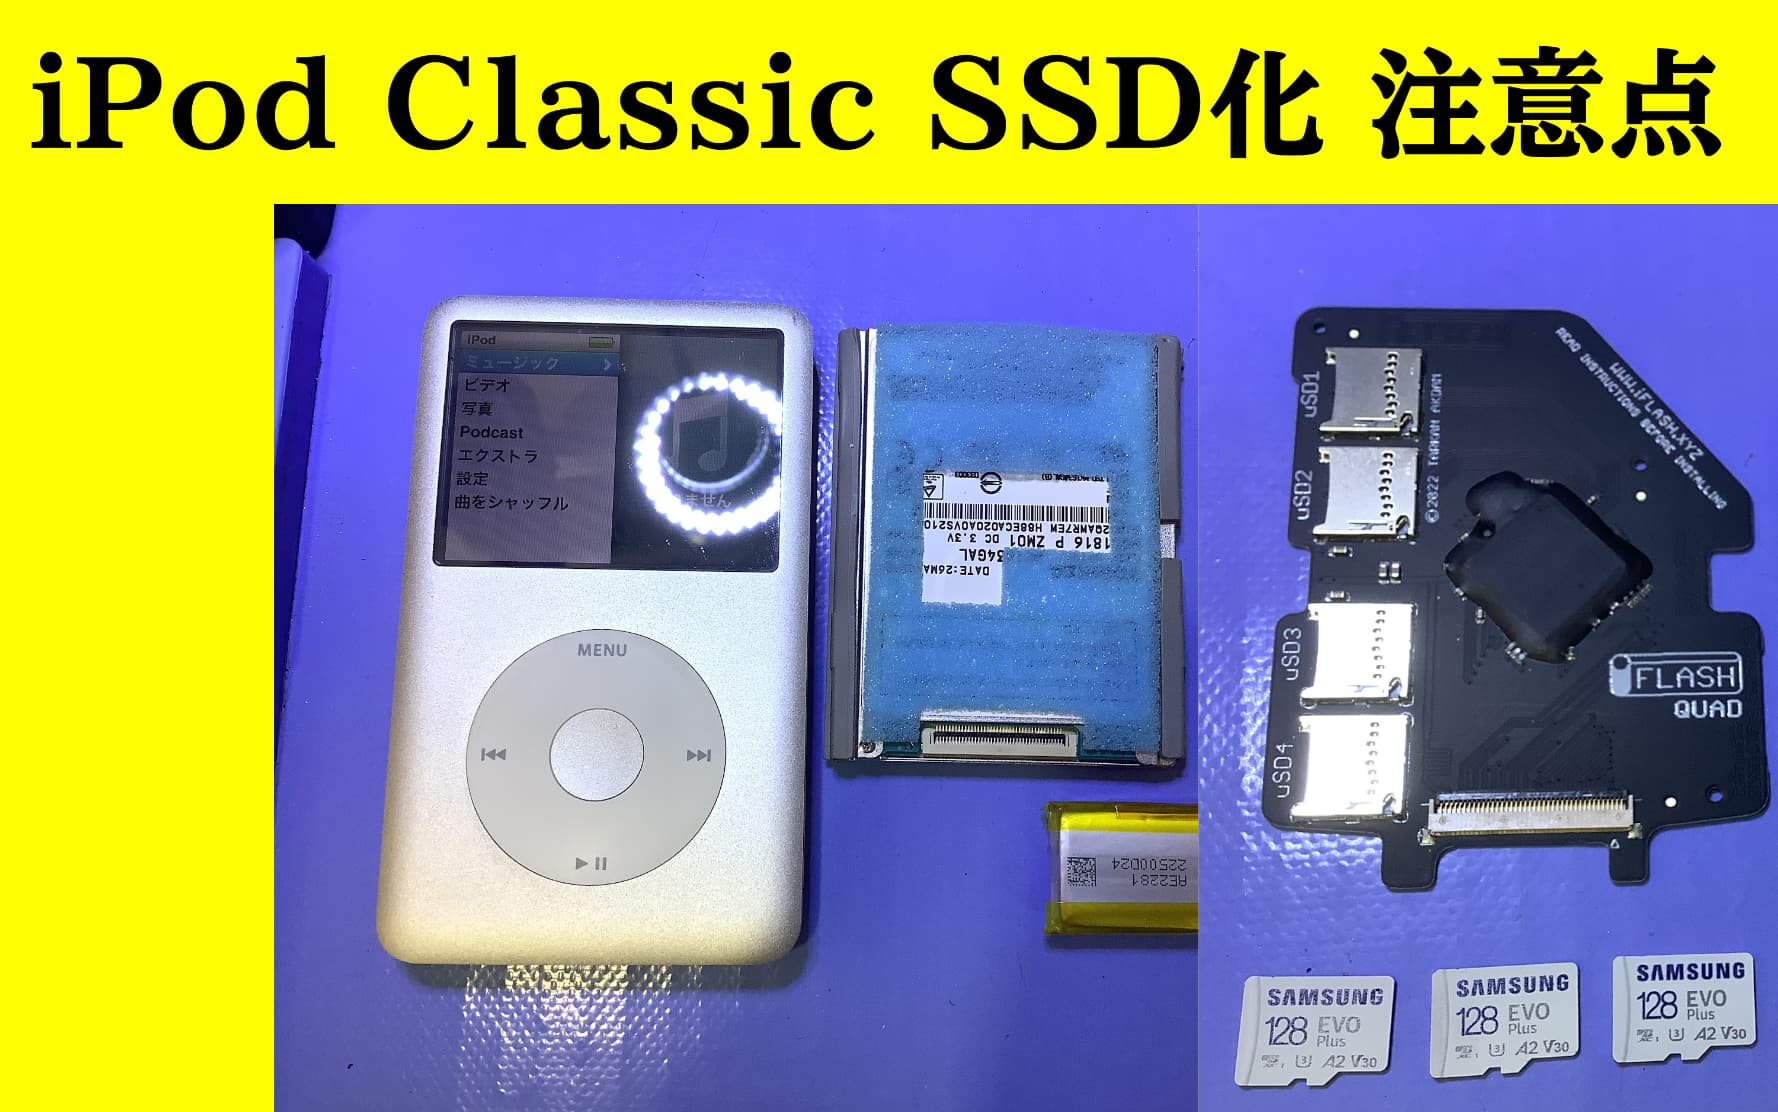 iPod ClassicのHDDのSSD化(microSDカード化)での注意事項 - スマホ修理